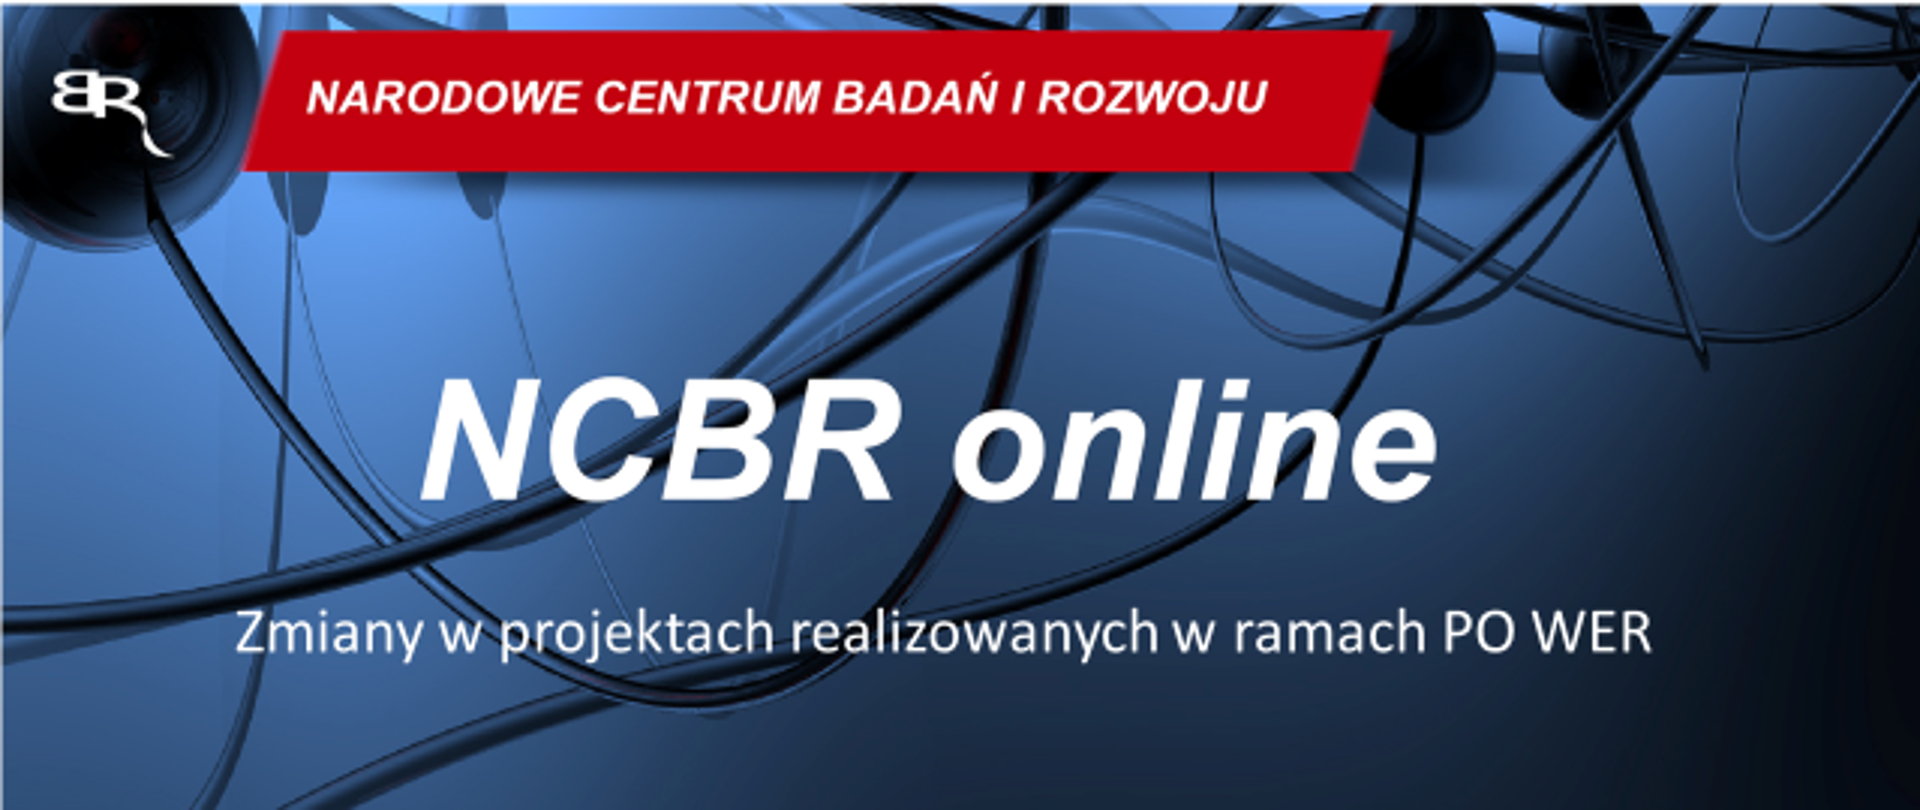 NCBR online Zmiany w projektach realizowanych w ramach PO WER